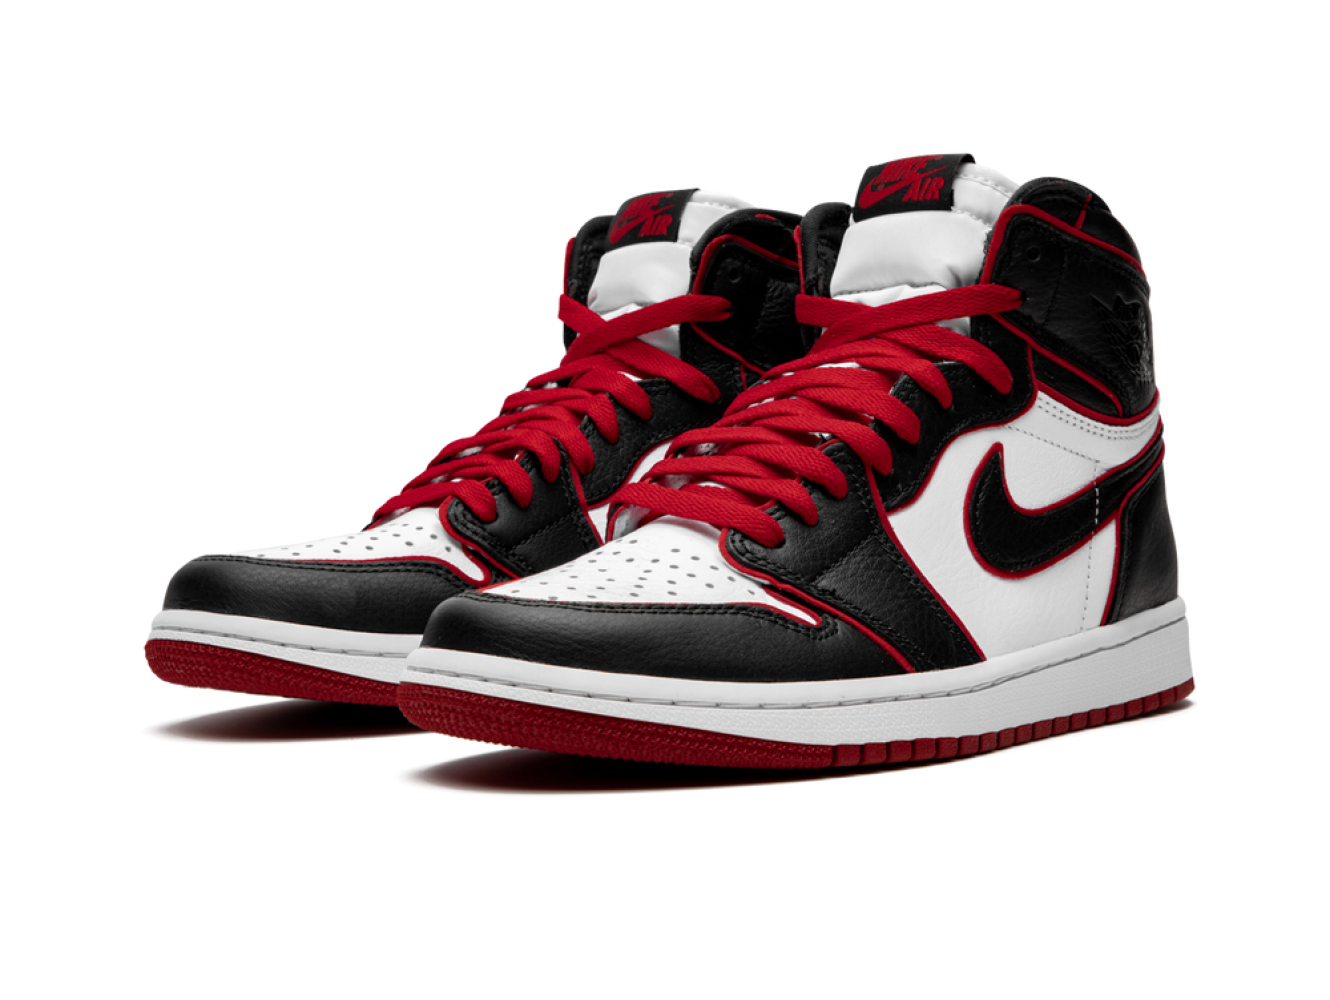 Jordan high. Nike Air Jordan 1 High og Bloodline. Nike Air Jordan 1 Retro. Nike Air Jordan 1 White Black Red. Nike Air Jordan 1 Bloodline.